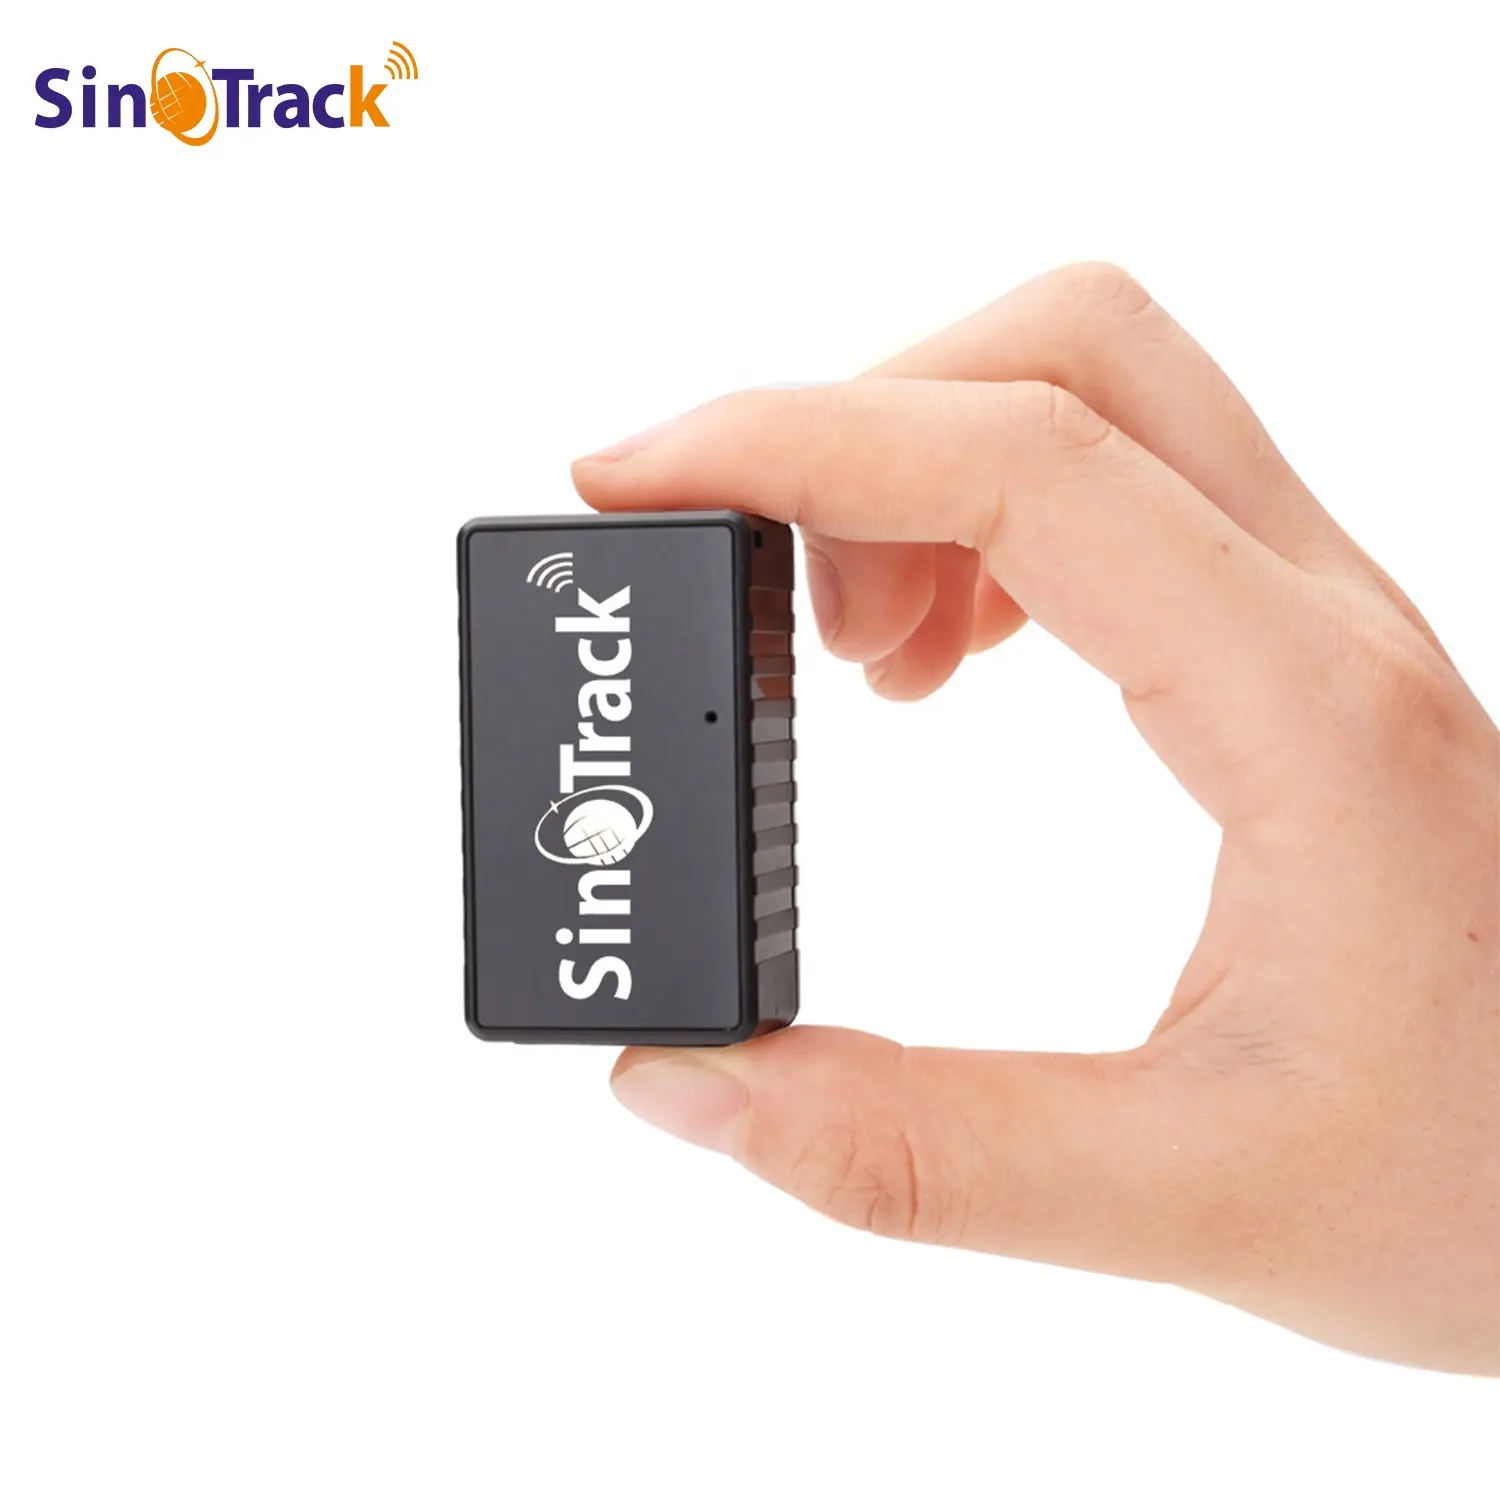 SinoTrack ST-903 Pelacak GPS Pintar, Perangkat Pelacak Kecil Populer dengan Aplikasi Sistem Pelacakan Gratis